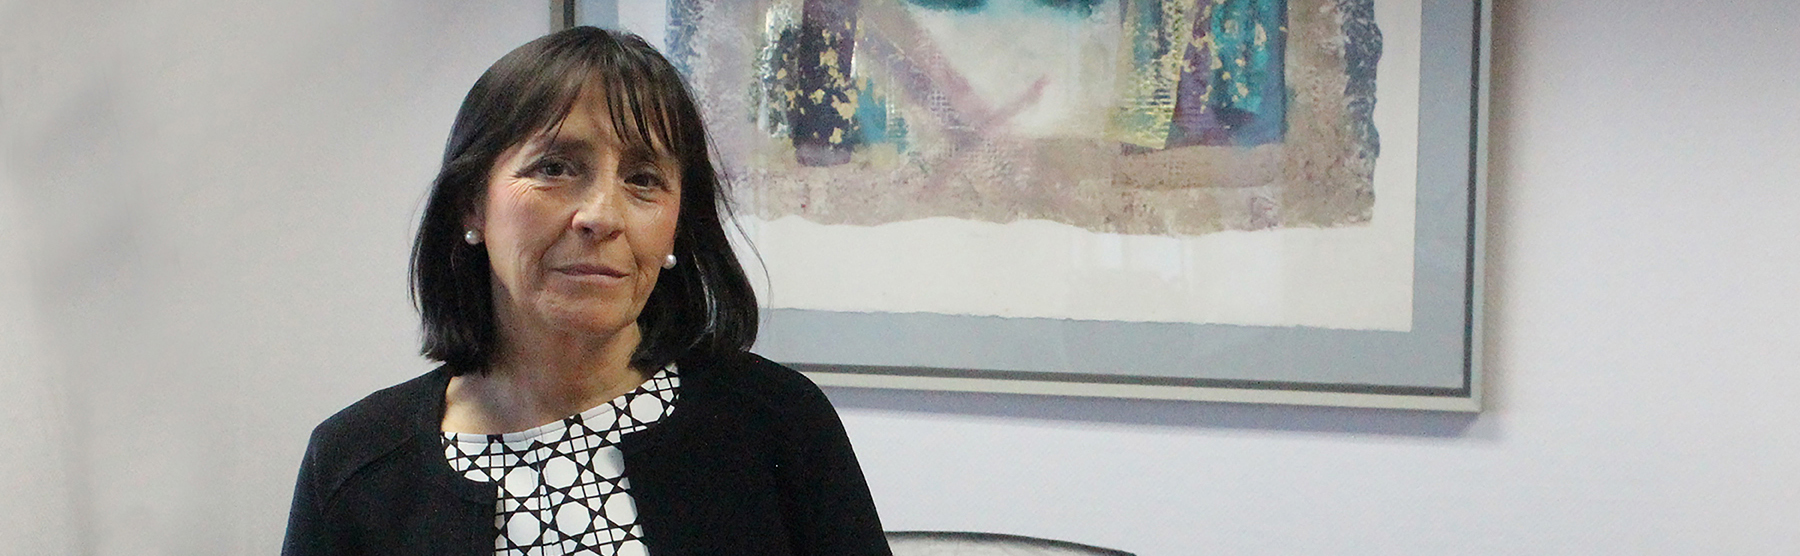 SEPI’s Board of Directors nominates Ms. Rosario Martínez Manzanedo as Hispasat’s CEO